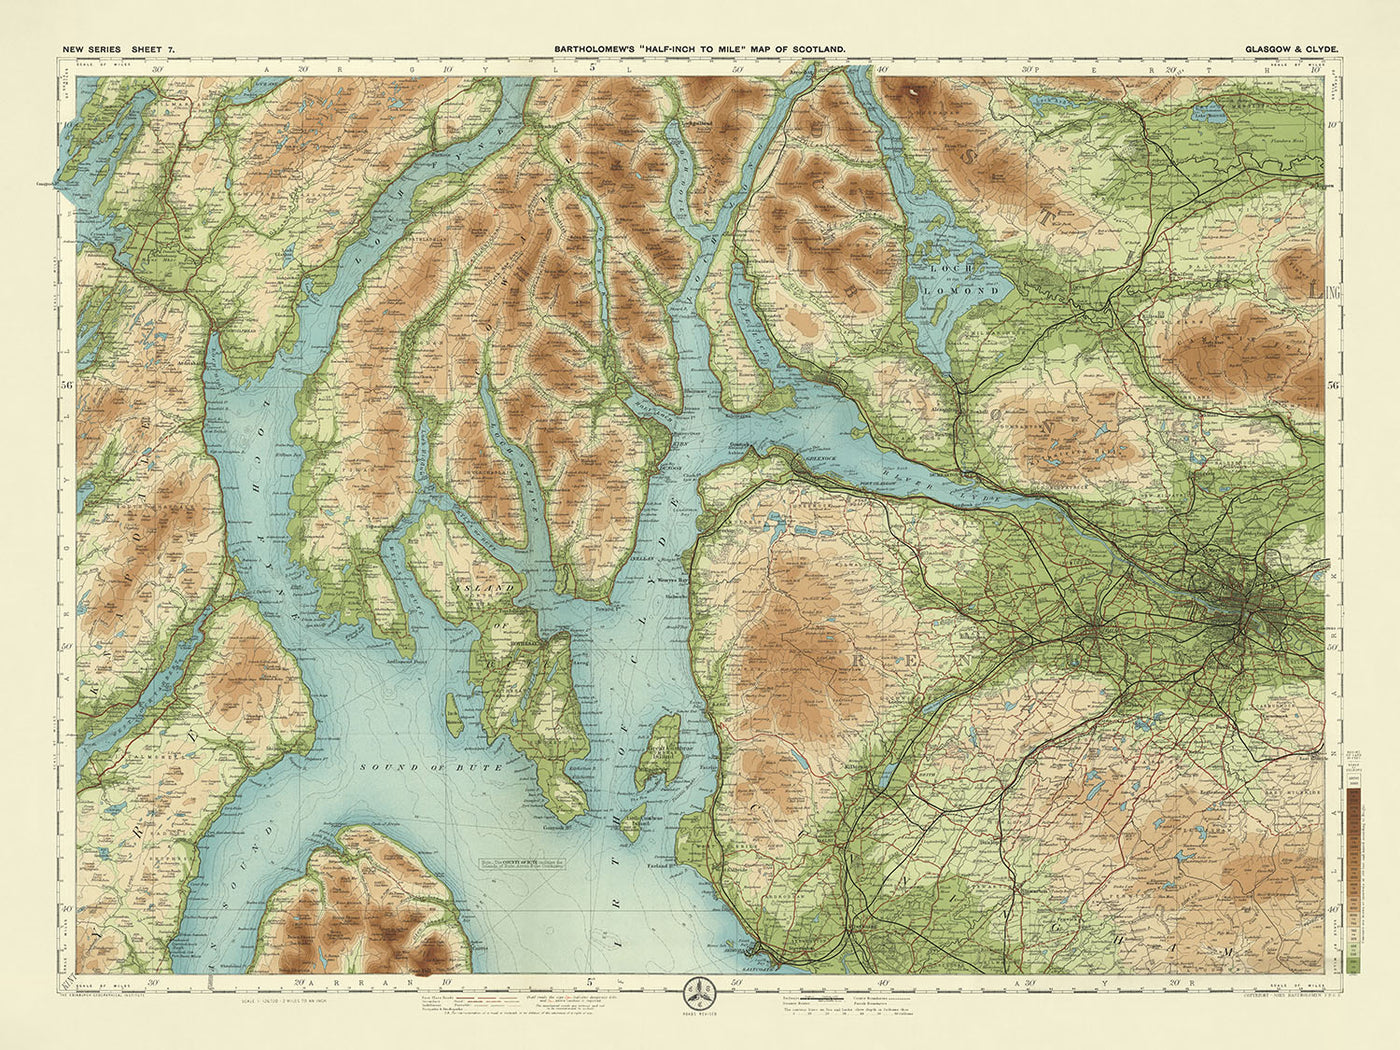 Ancienne carte OS de Glasgow, Lanarkshire par Bartholomew, 1901 : Loch Lomond, Firth of Clyde, Alpes d'Arrochar, Trossachs, château de Dumbarton, chemins de fer